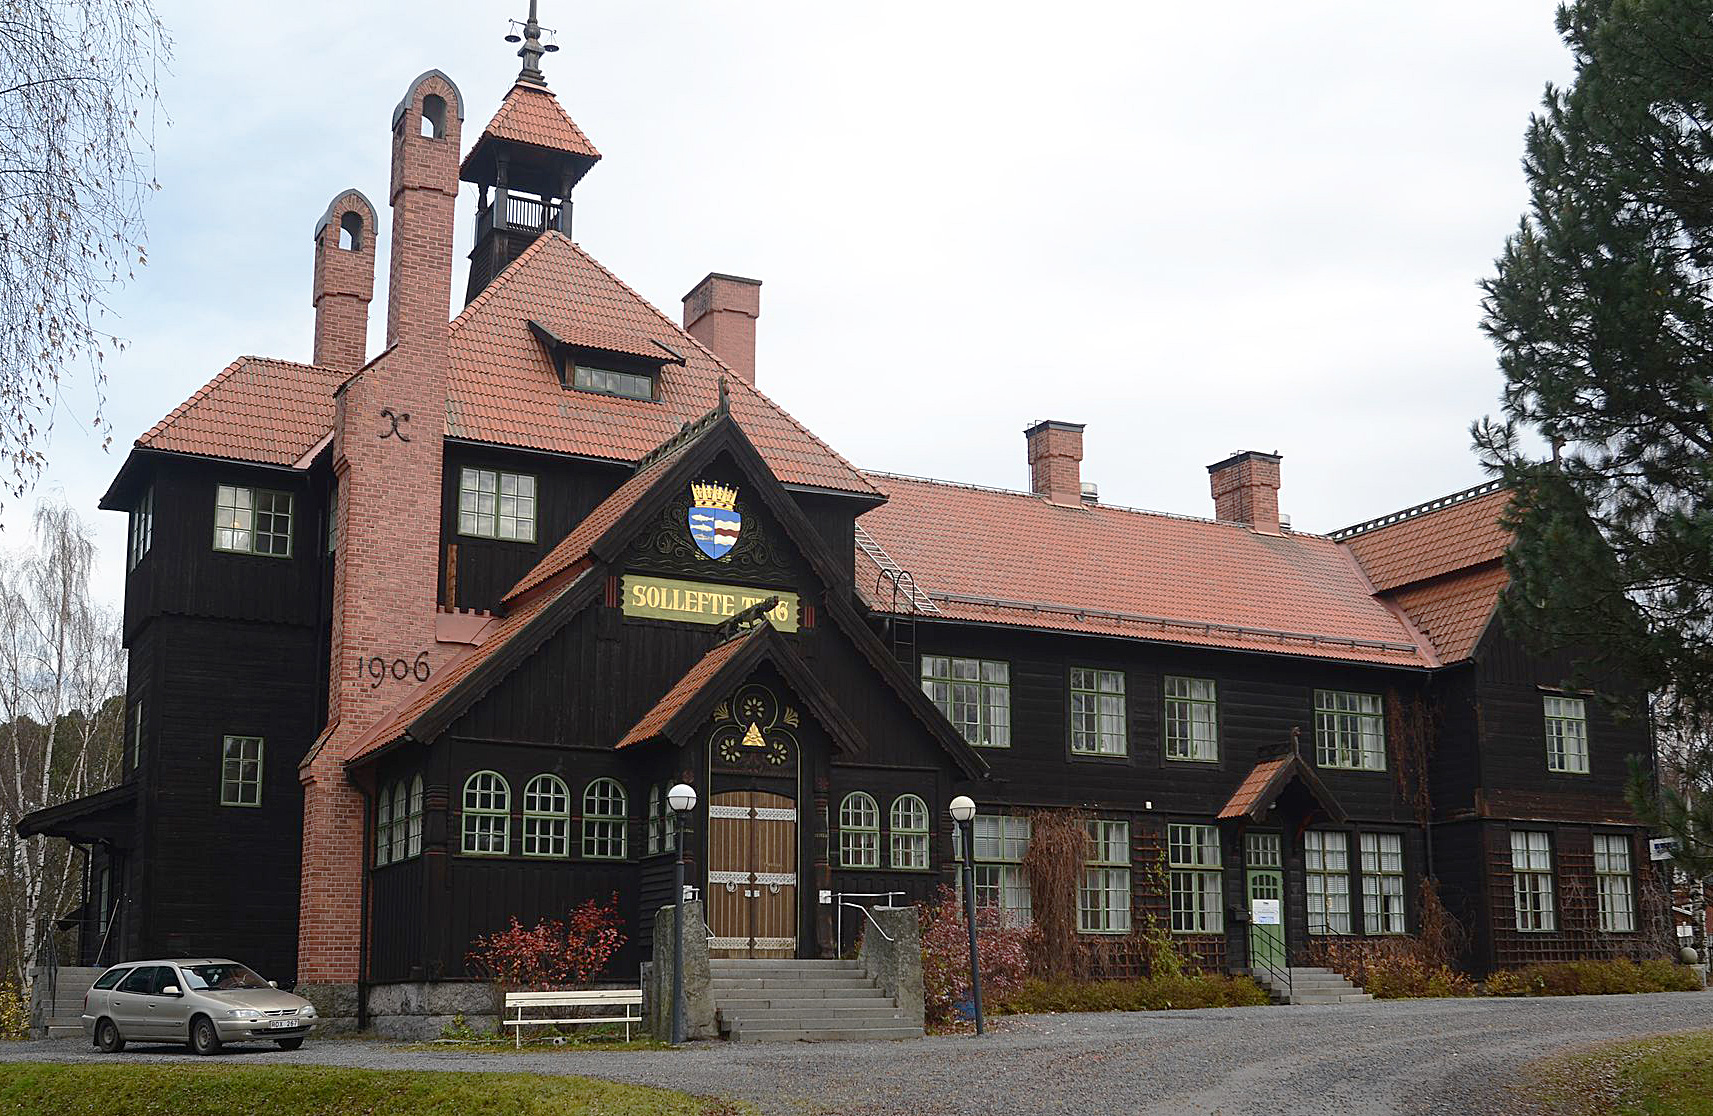  Är Tingshuset i Sollefteå Sveriges vackraste byggnad genom tiderna?